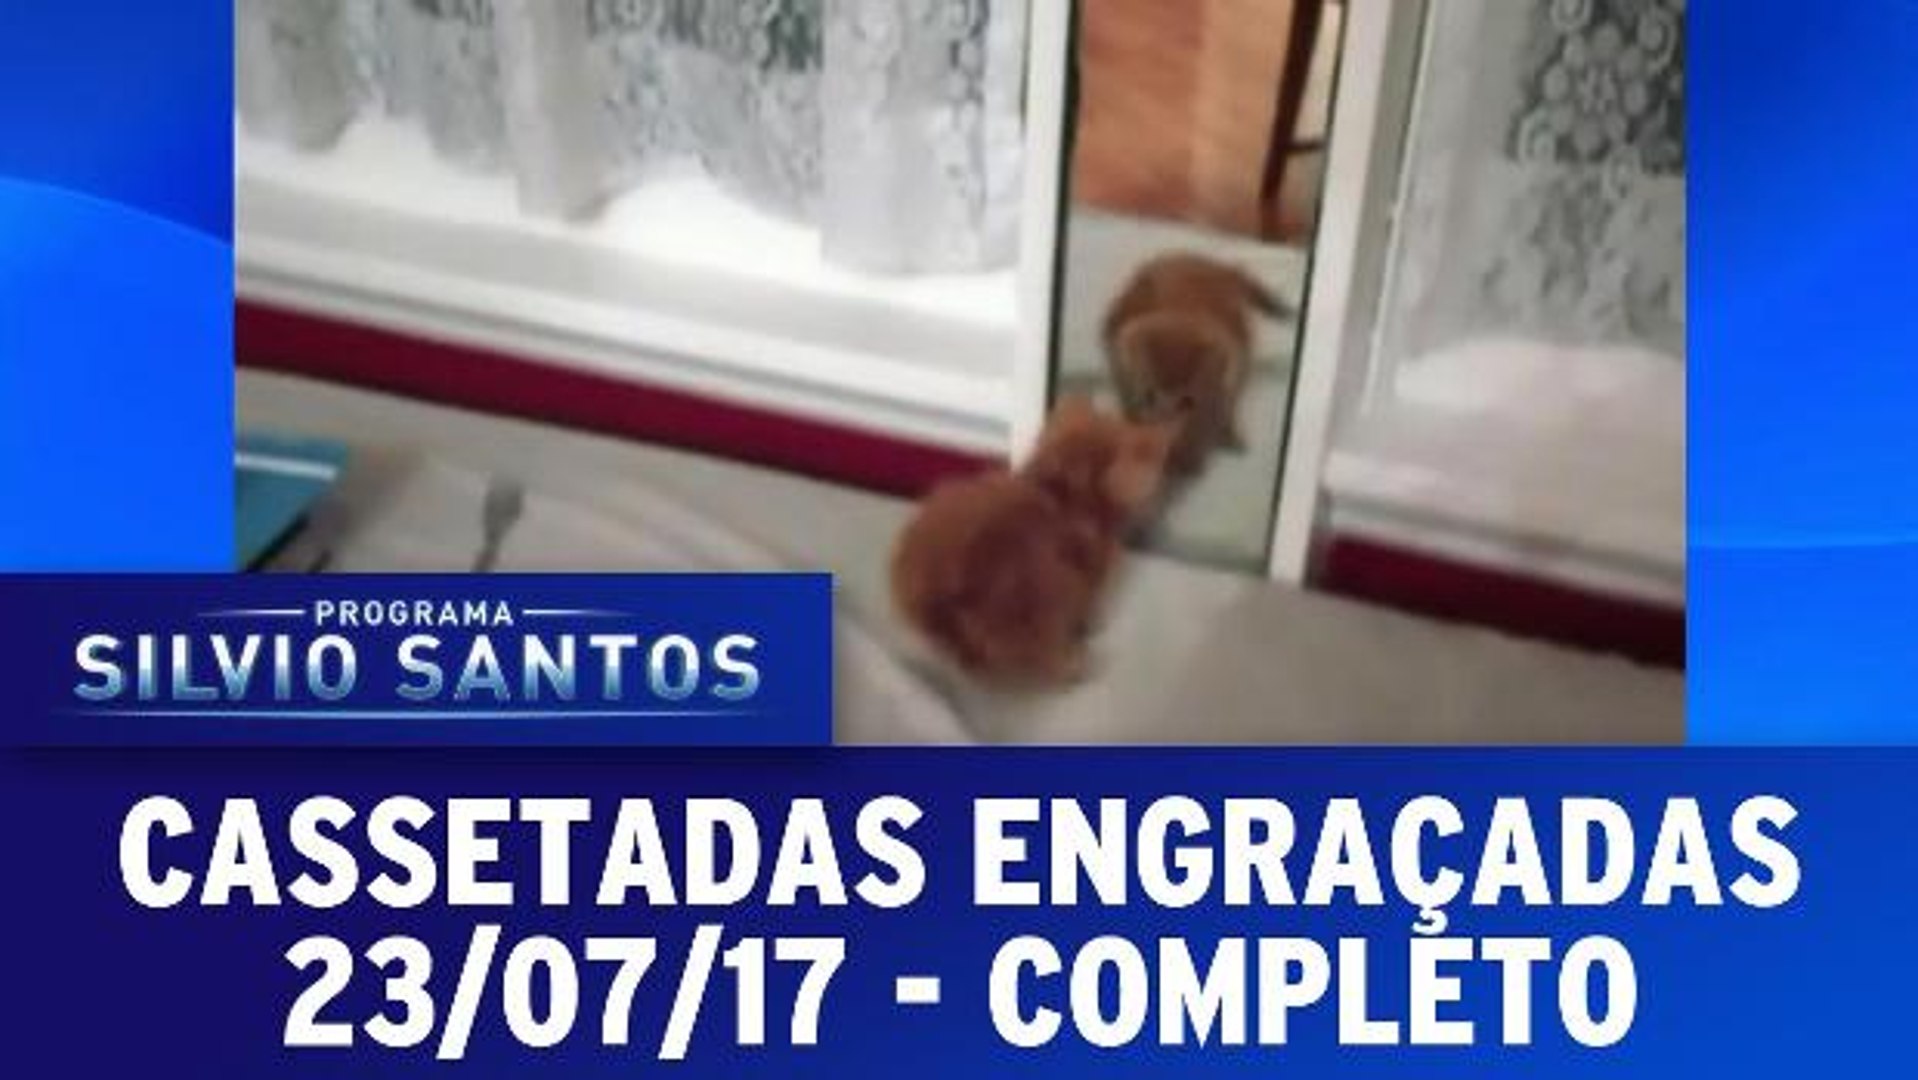 VIDEOS ENGRAÇADOS DE ANIMAIS - TENTE NÃO RIR (COMPLETO COMPILADO 2